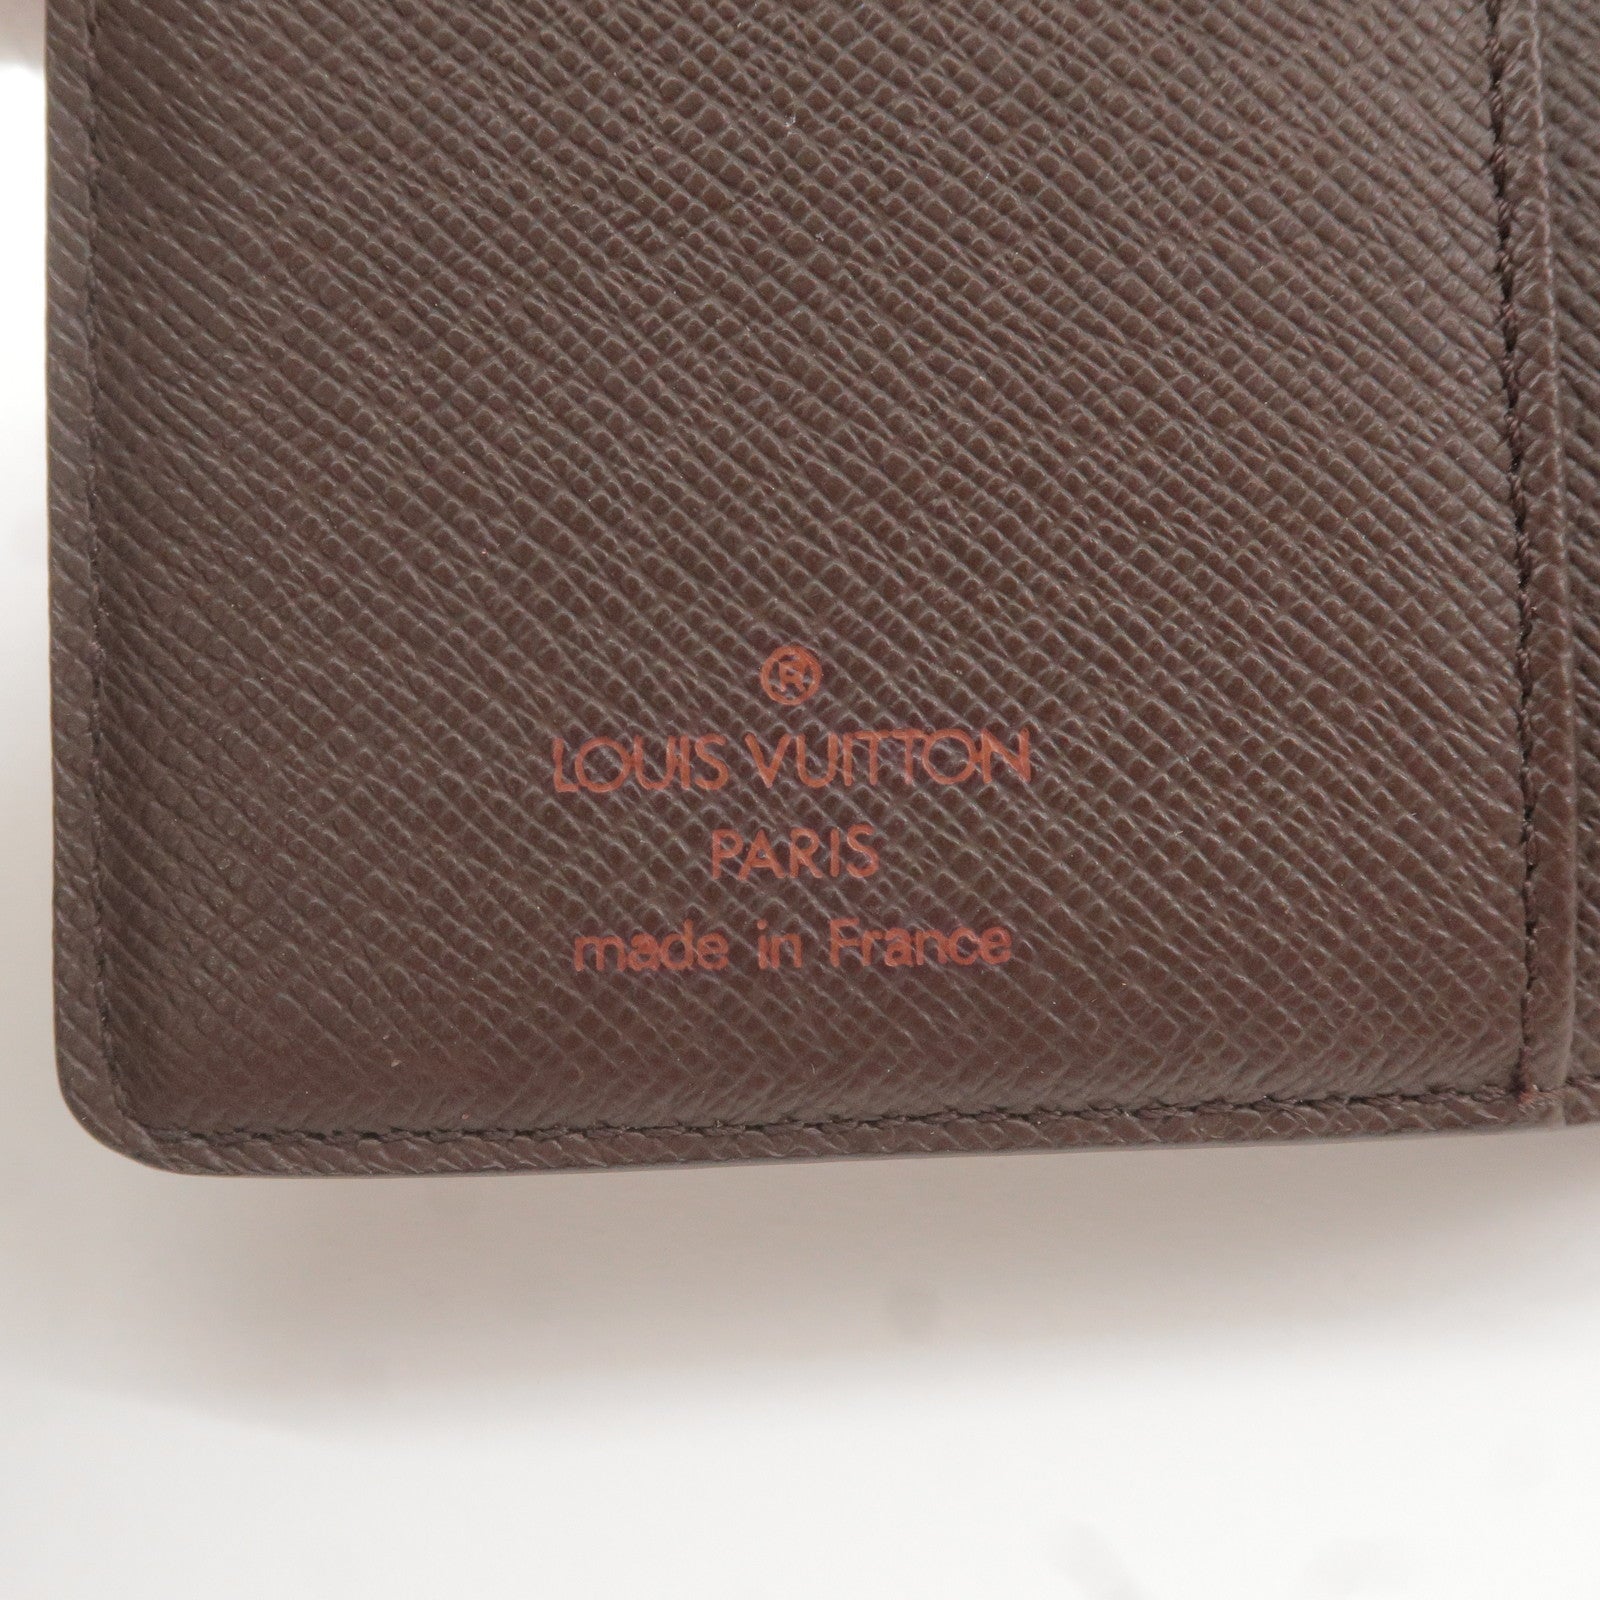 Porte - Monnaie - Billets - Viennois - Louis - ep_vintage luxury Store -  Damier - Louis Vuitton 2011 pre-owned Wishire PM tote bag Brown - M61664 –  dct - Vuitton - Wallet